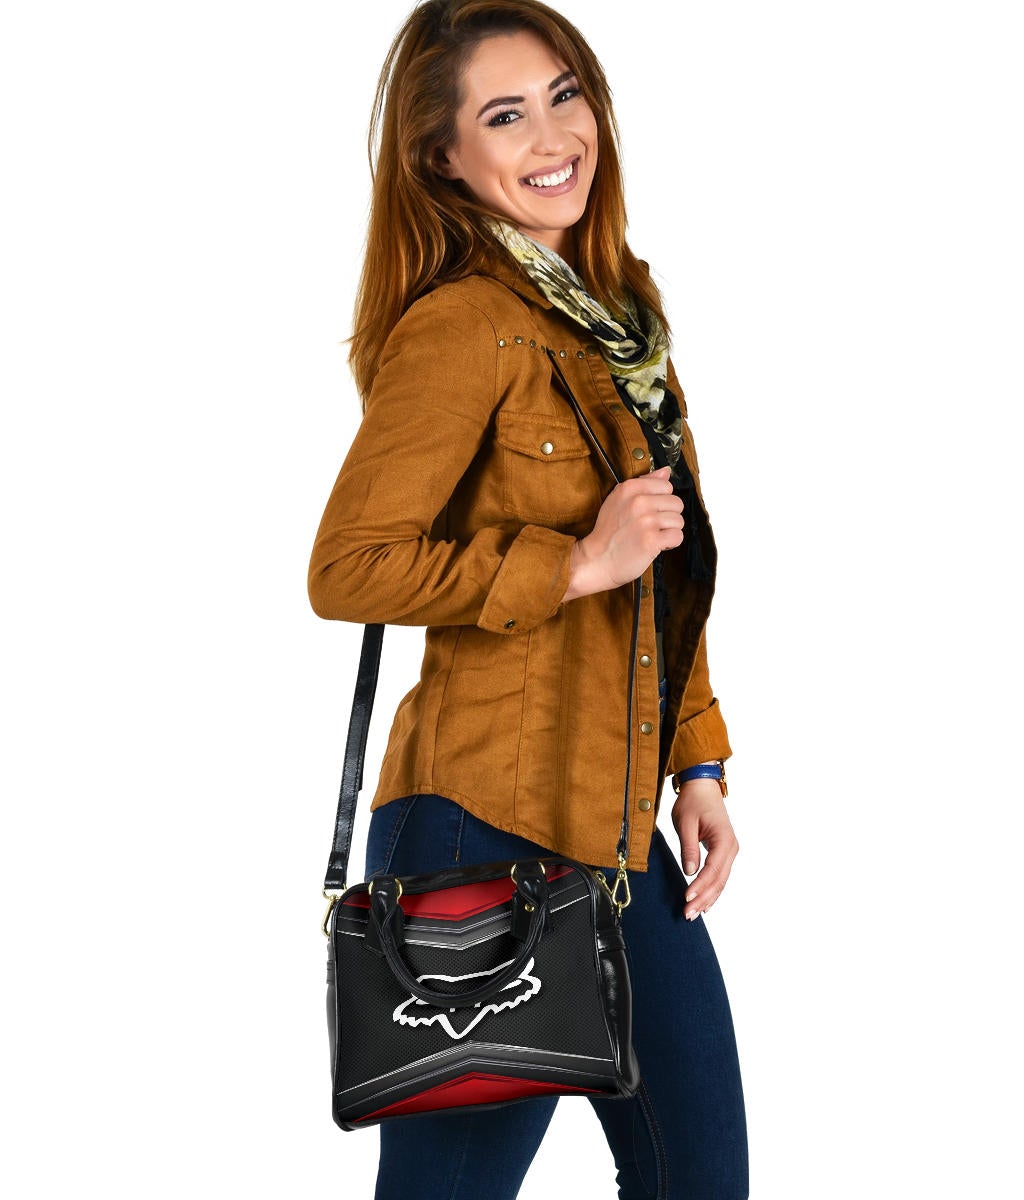 FOX Racing Shoulder Bag Purse | Purses and bags, Purses, Shoulder bag